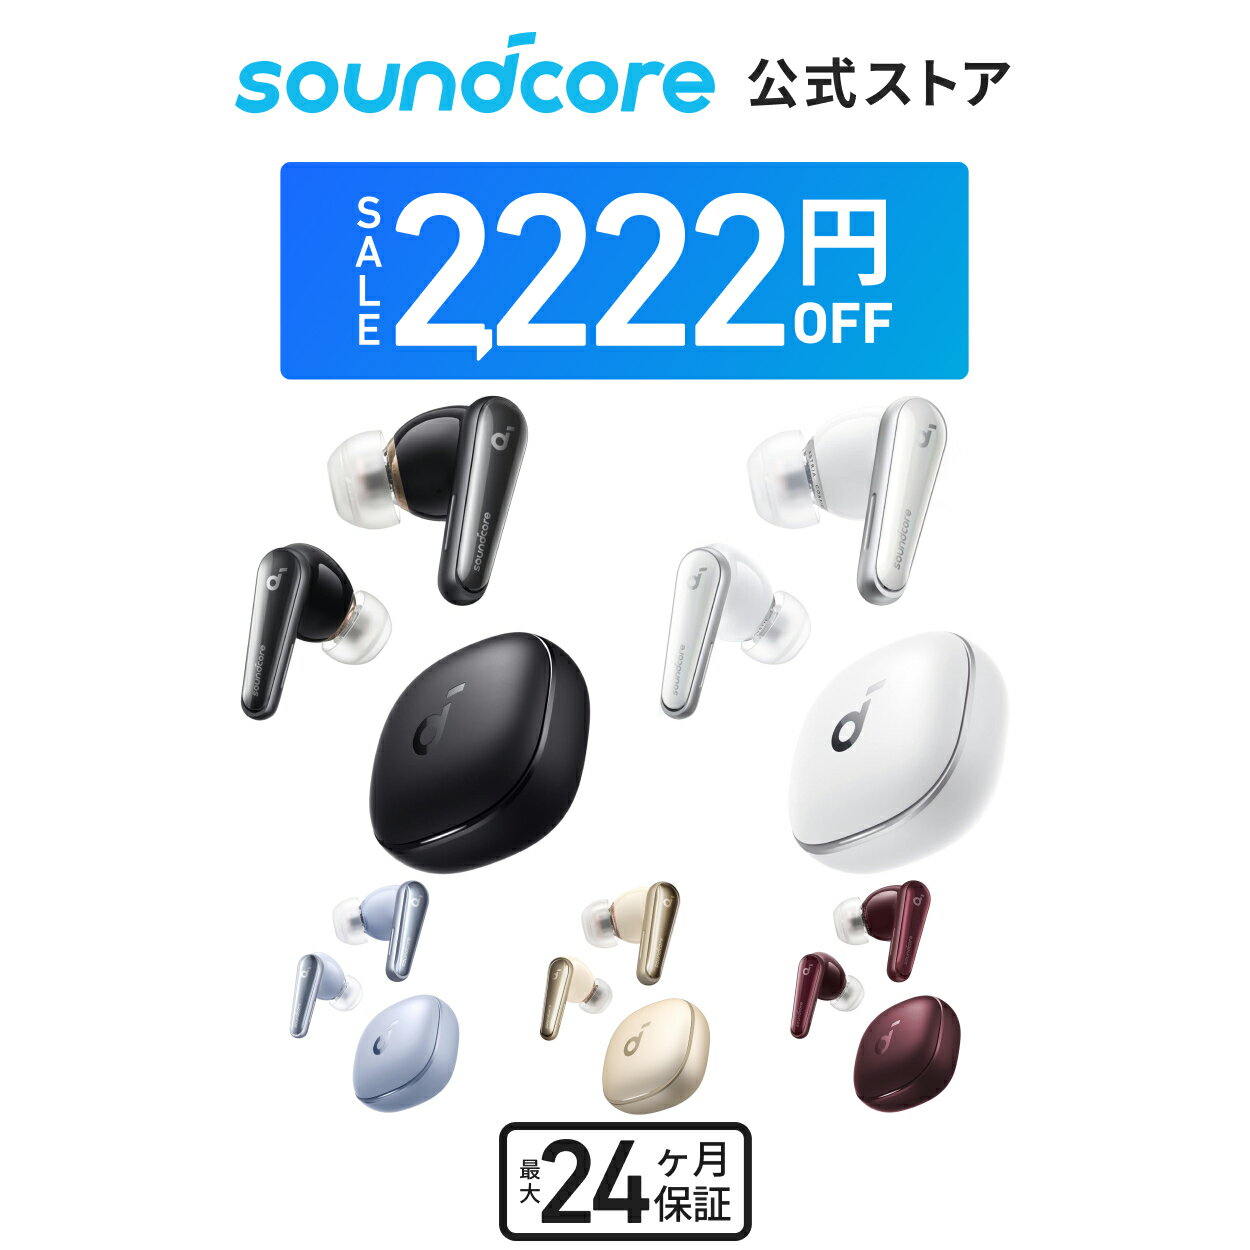 【2 222円OFFクーポン 6/11まで】【あす楽対応】Anker Soundcore Liberty 4 ワイヤレスイヤホン Bluetooth 5.3 完全ワイヤレスイヤホン / ウルトラノイズキャンセリング 2.0 / 3Dオーディオ / …